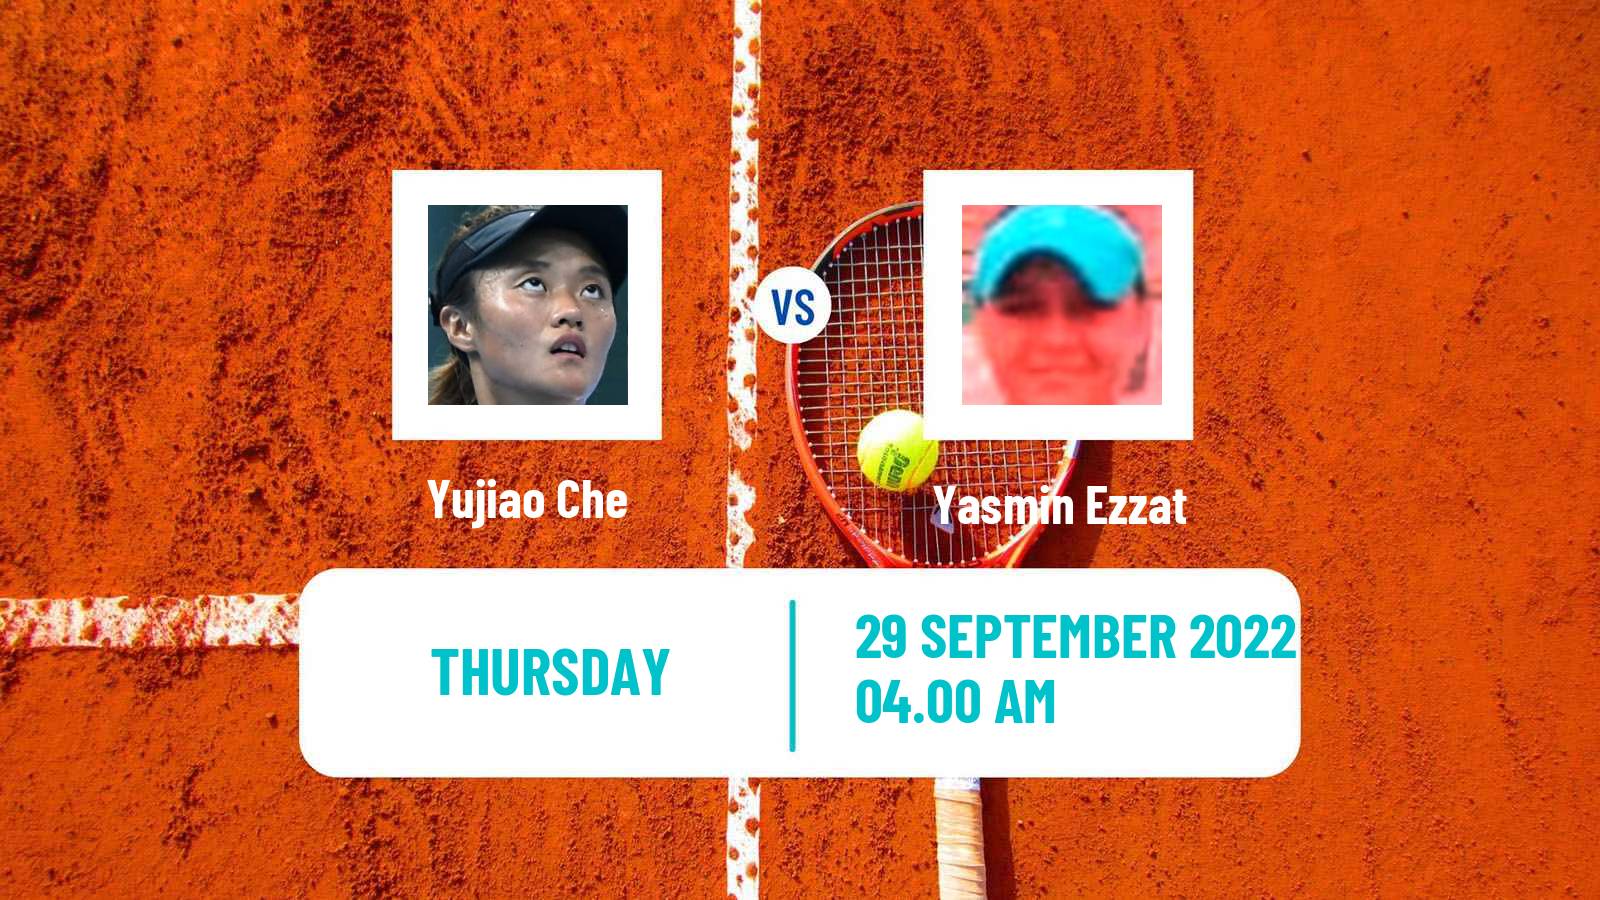 Tennis ITF Tournaments Yujiao Che - Yasmin Ezzat